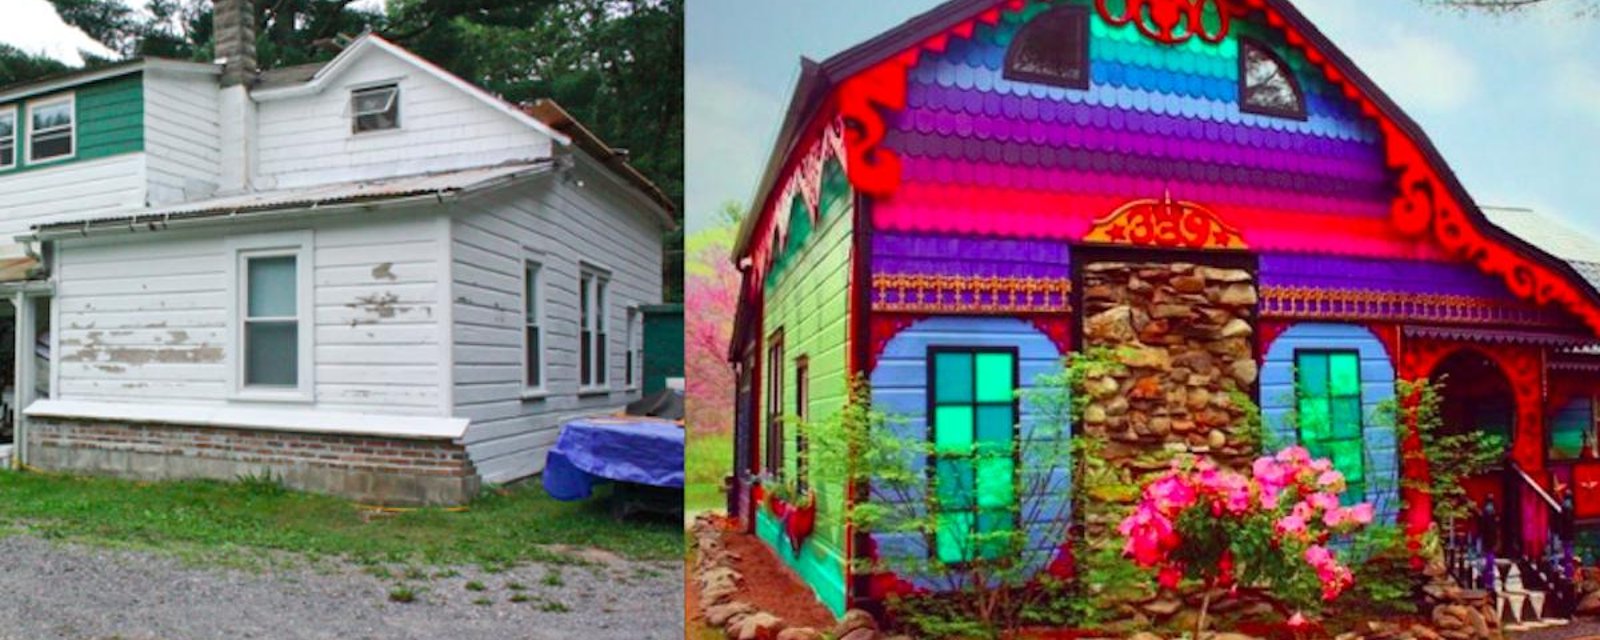 Un couple transforme une antique maison de ferme en chef-d'œuvre hallucinant